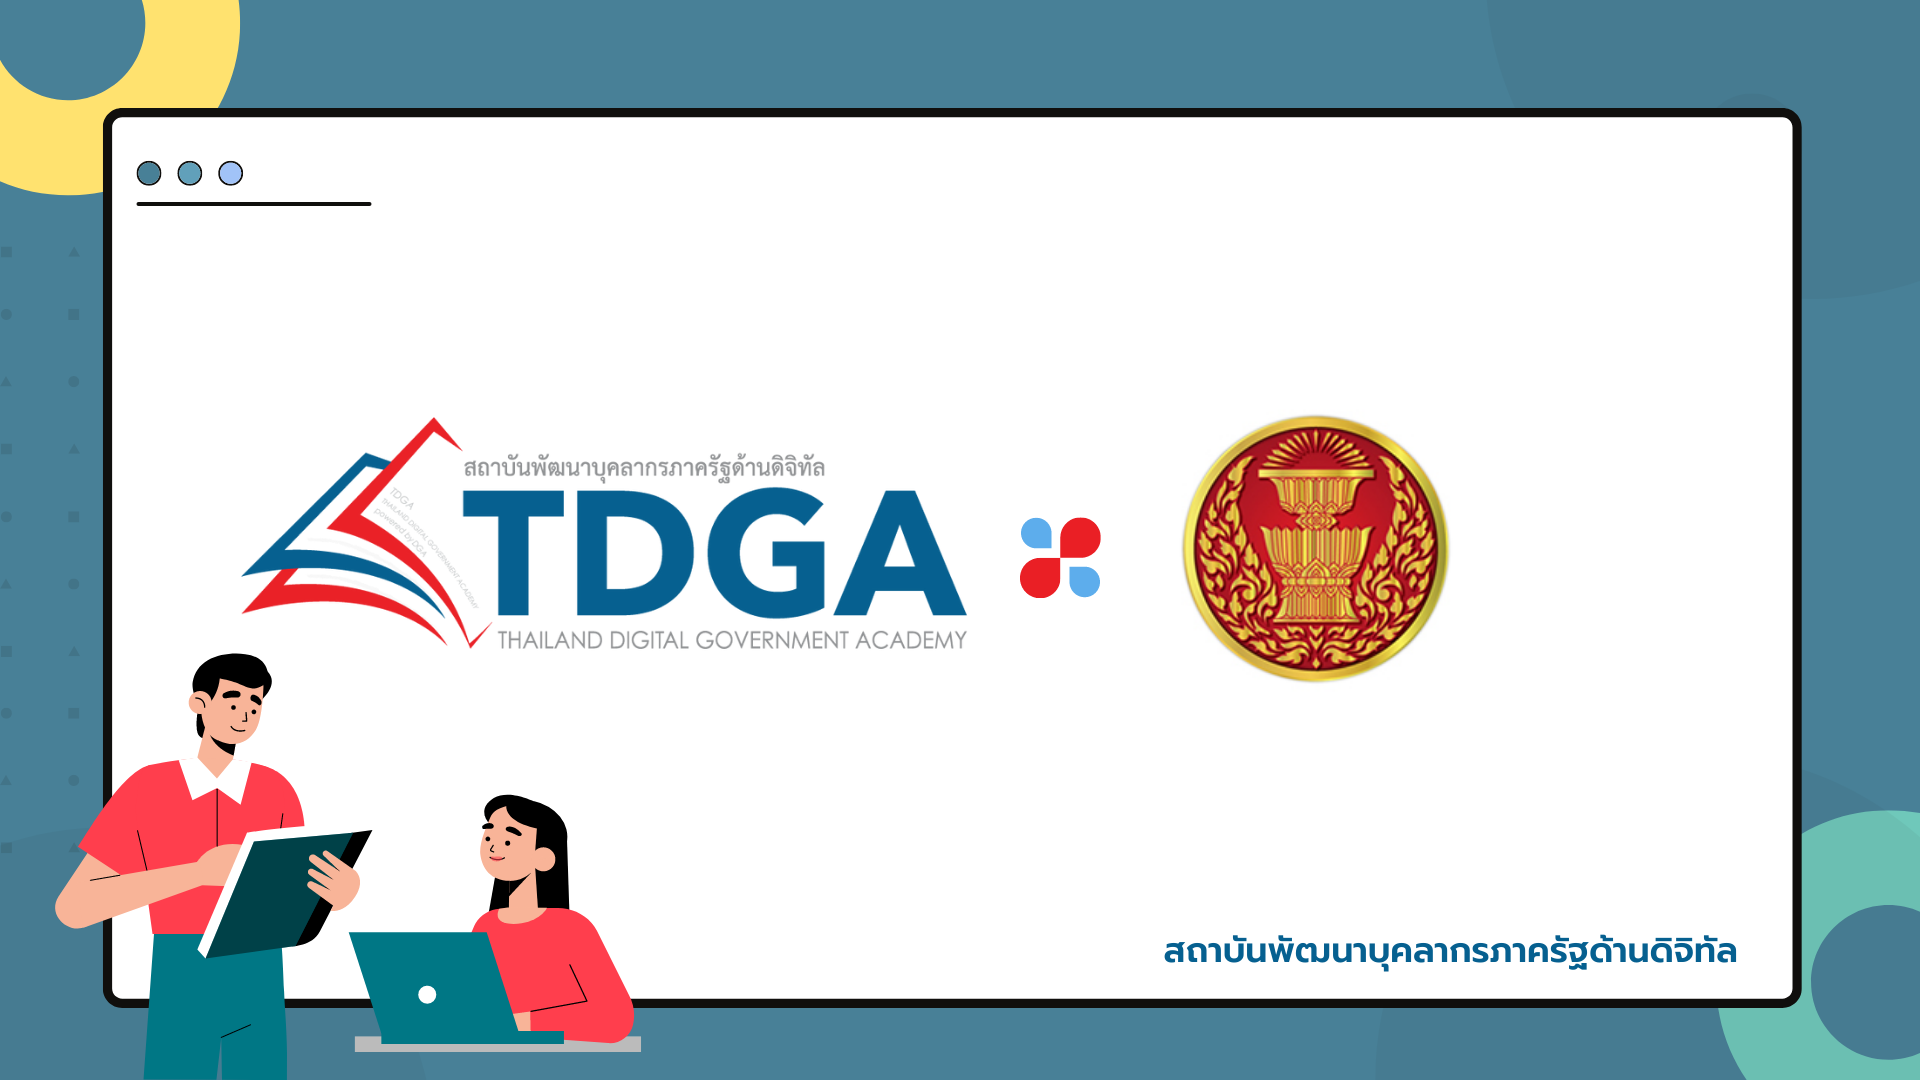 สถาบัน TDGA ร่วมเป็นวิทยากรการบรรยายเรื่อง “ภาวะผู้นำในยุคดิจิทัล” ให้แก่สำนักงานเลขาธิการสภาผู้แทนราษฎร